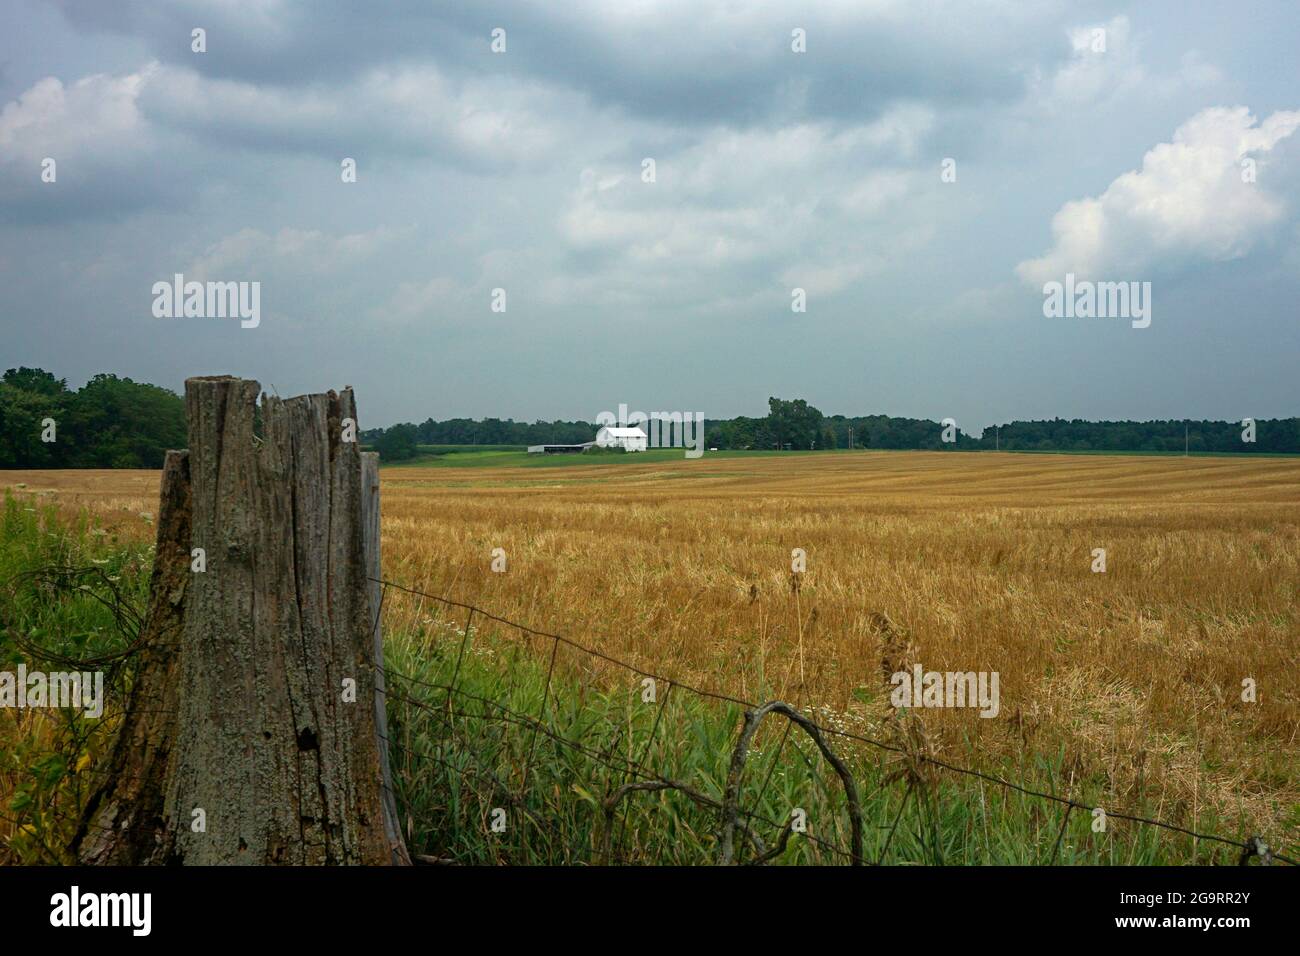 Escena agrícola de un campo con edificios blancos de la granja en el fondo y una valla de alambre y un tocón de árbol en el primer plano Foto de stock